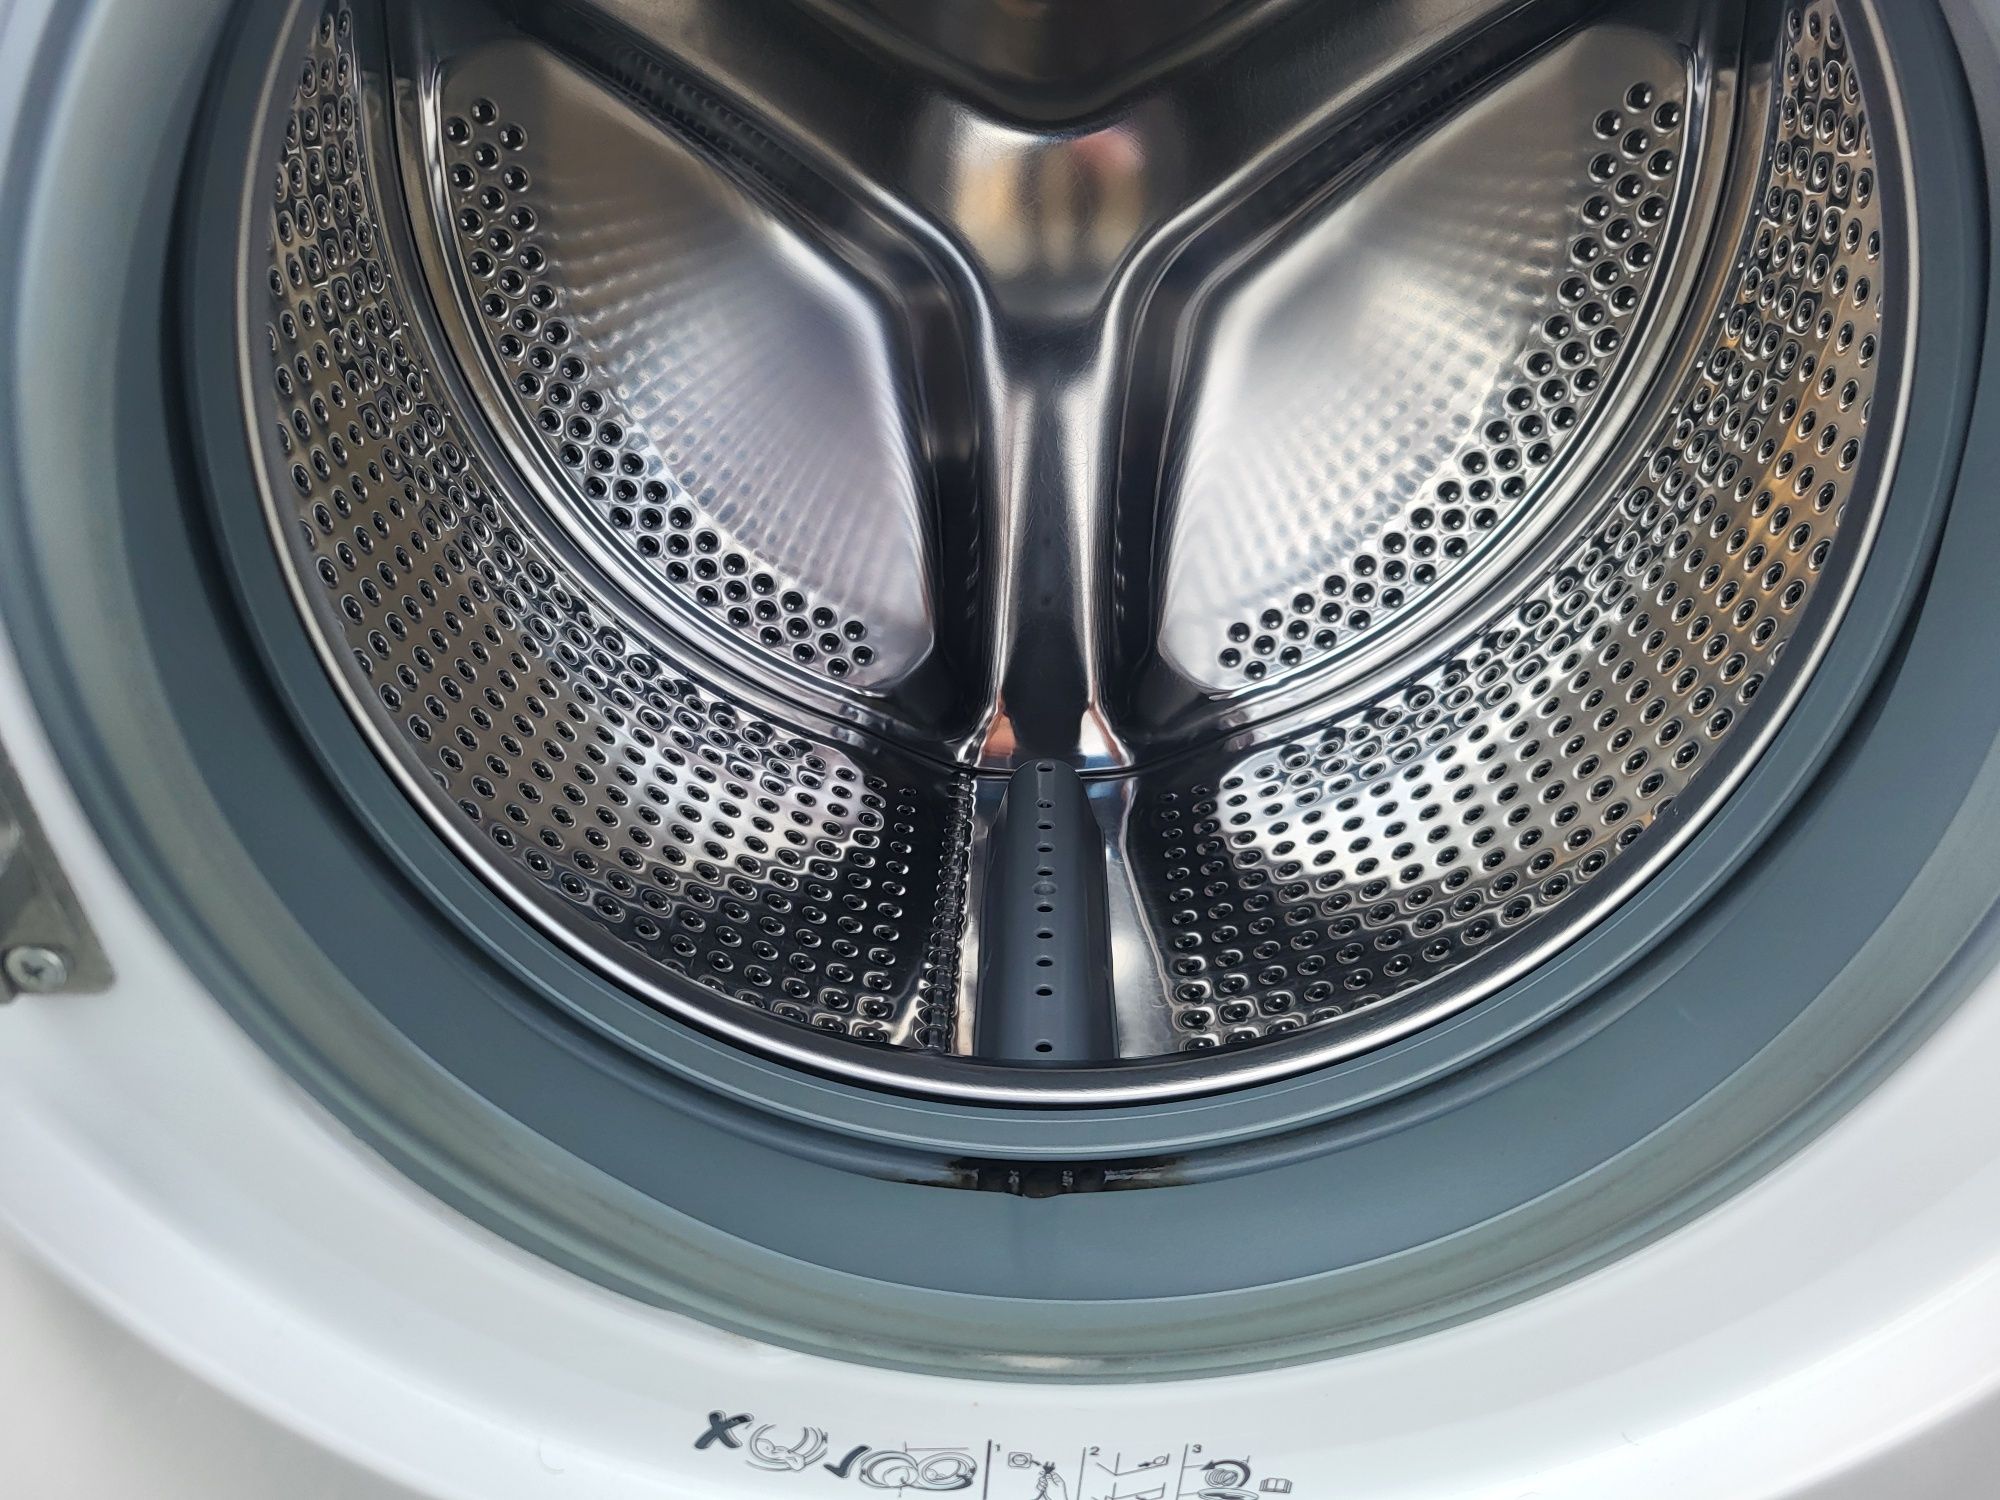 Máquina de lavar roupa Beko de 7 kg com entrega e garantia